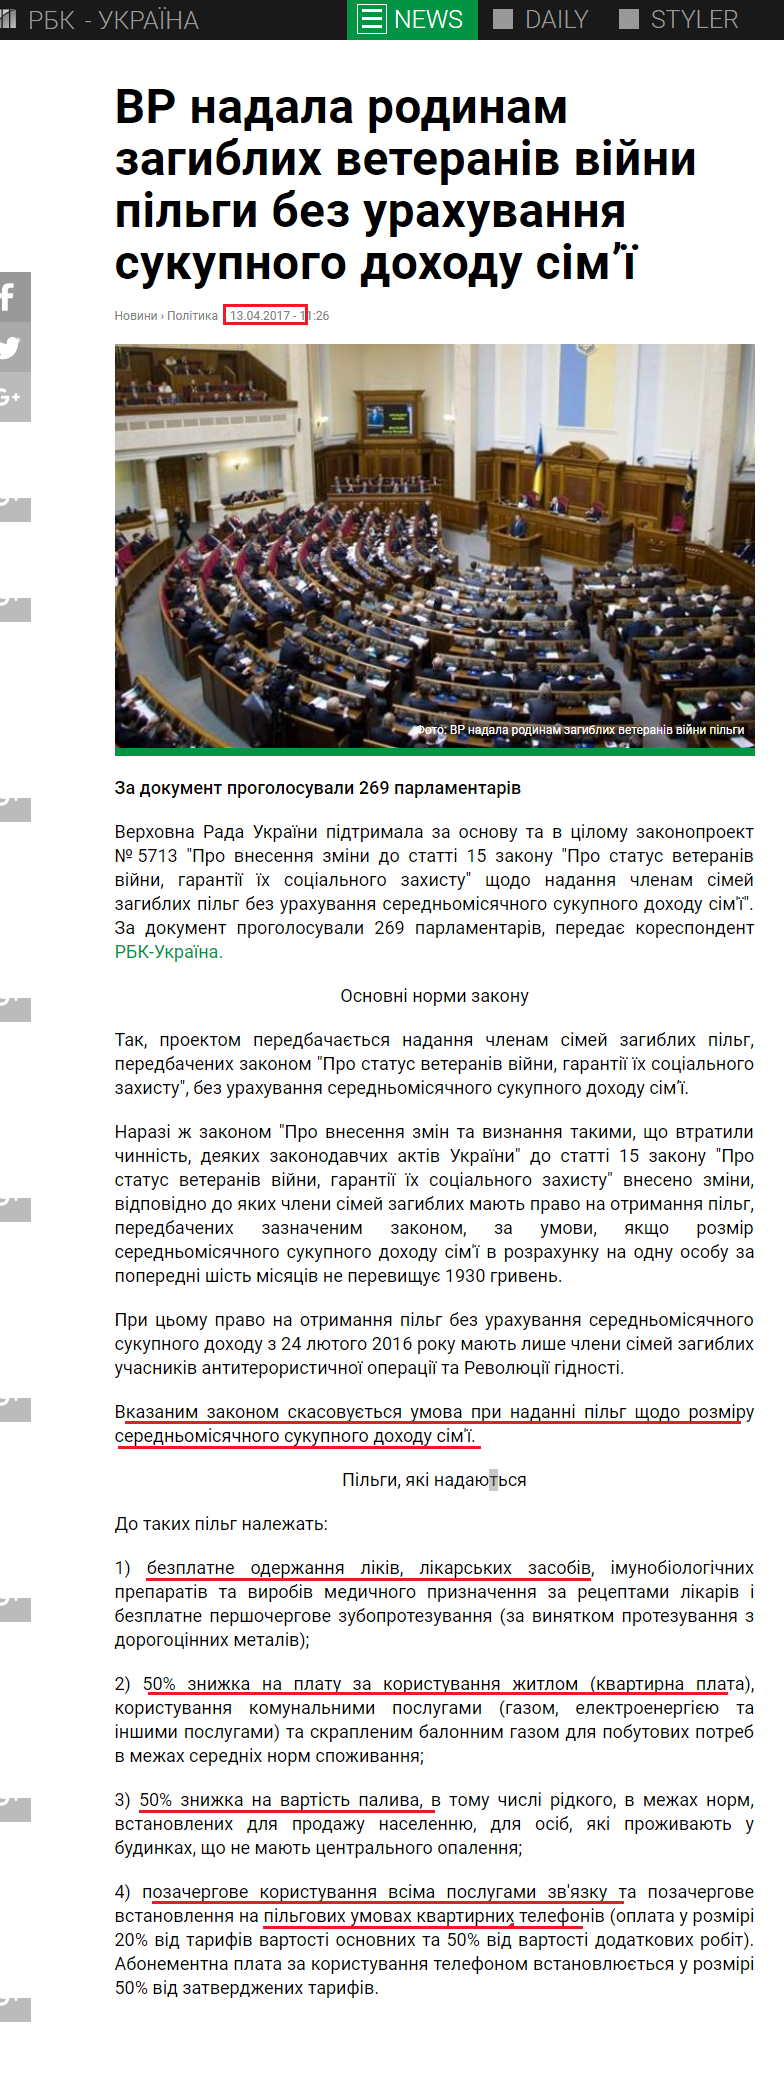 https://www.rbc.ua/ukr/news/vr-predostavila-semyam-pogibshih-veteranov-1492071998.html